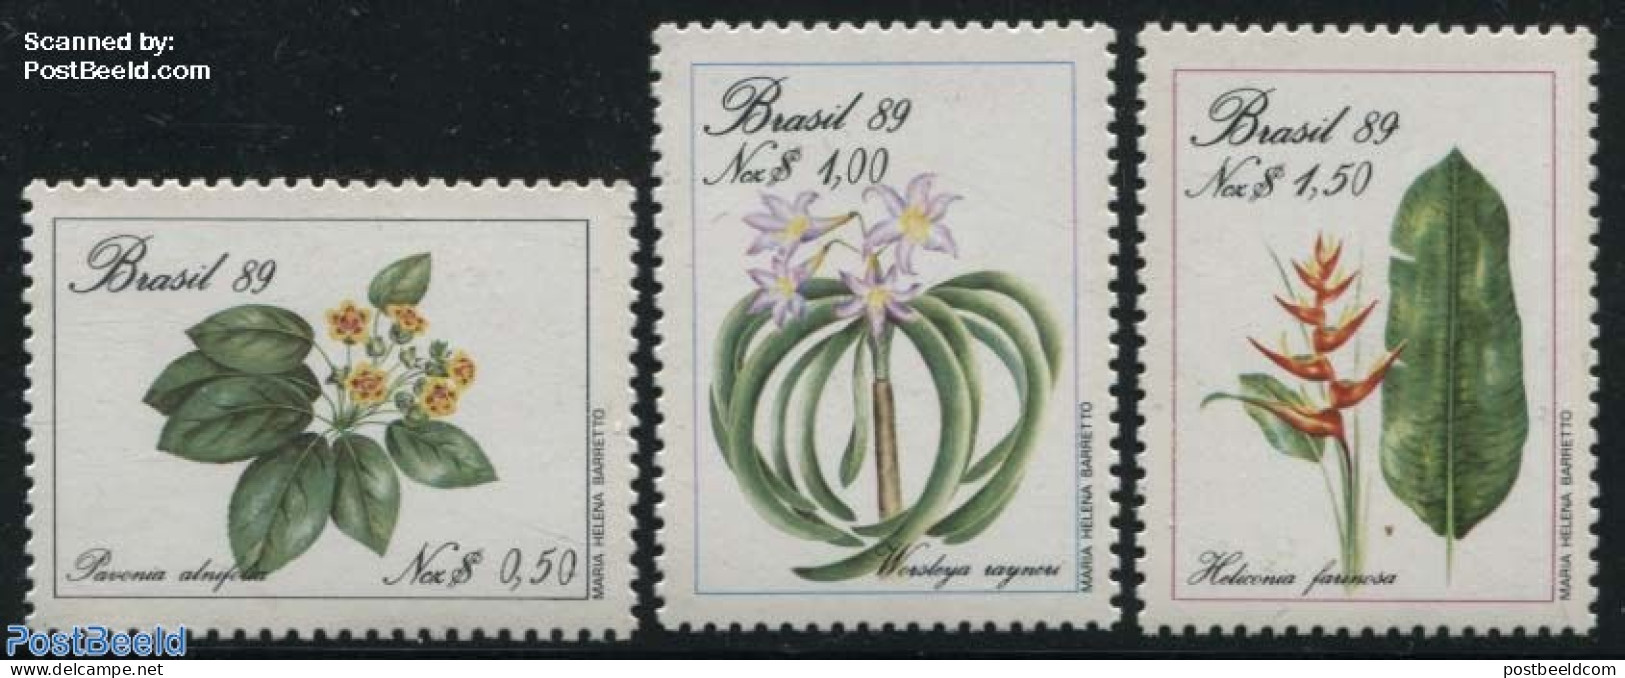 Brazil 1989 Flowers 3v, Mint NH, Nature - Flowers & Plants - Ongebruikt